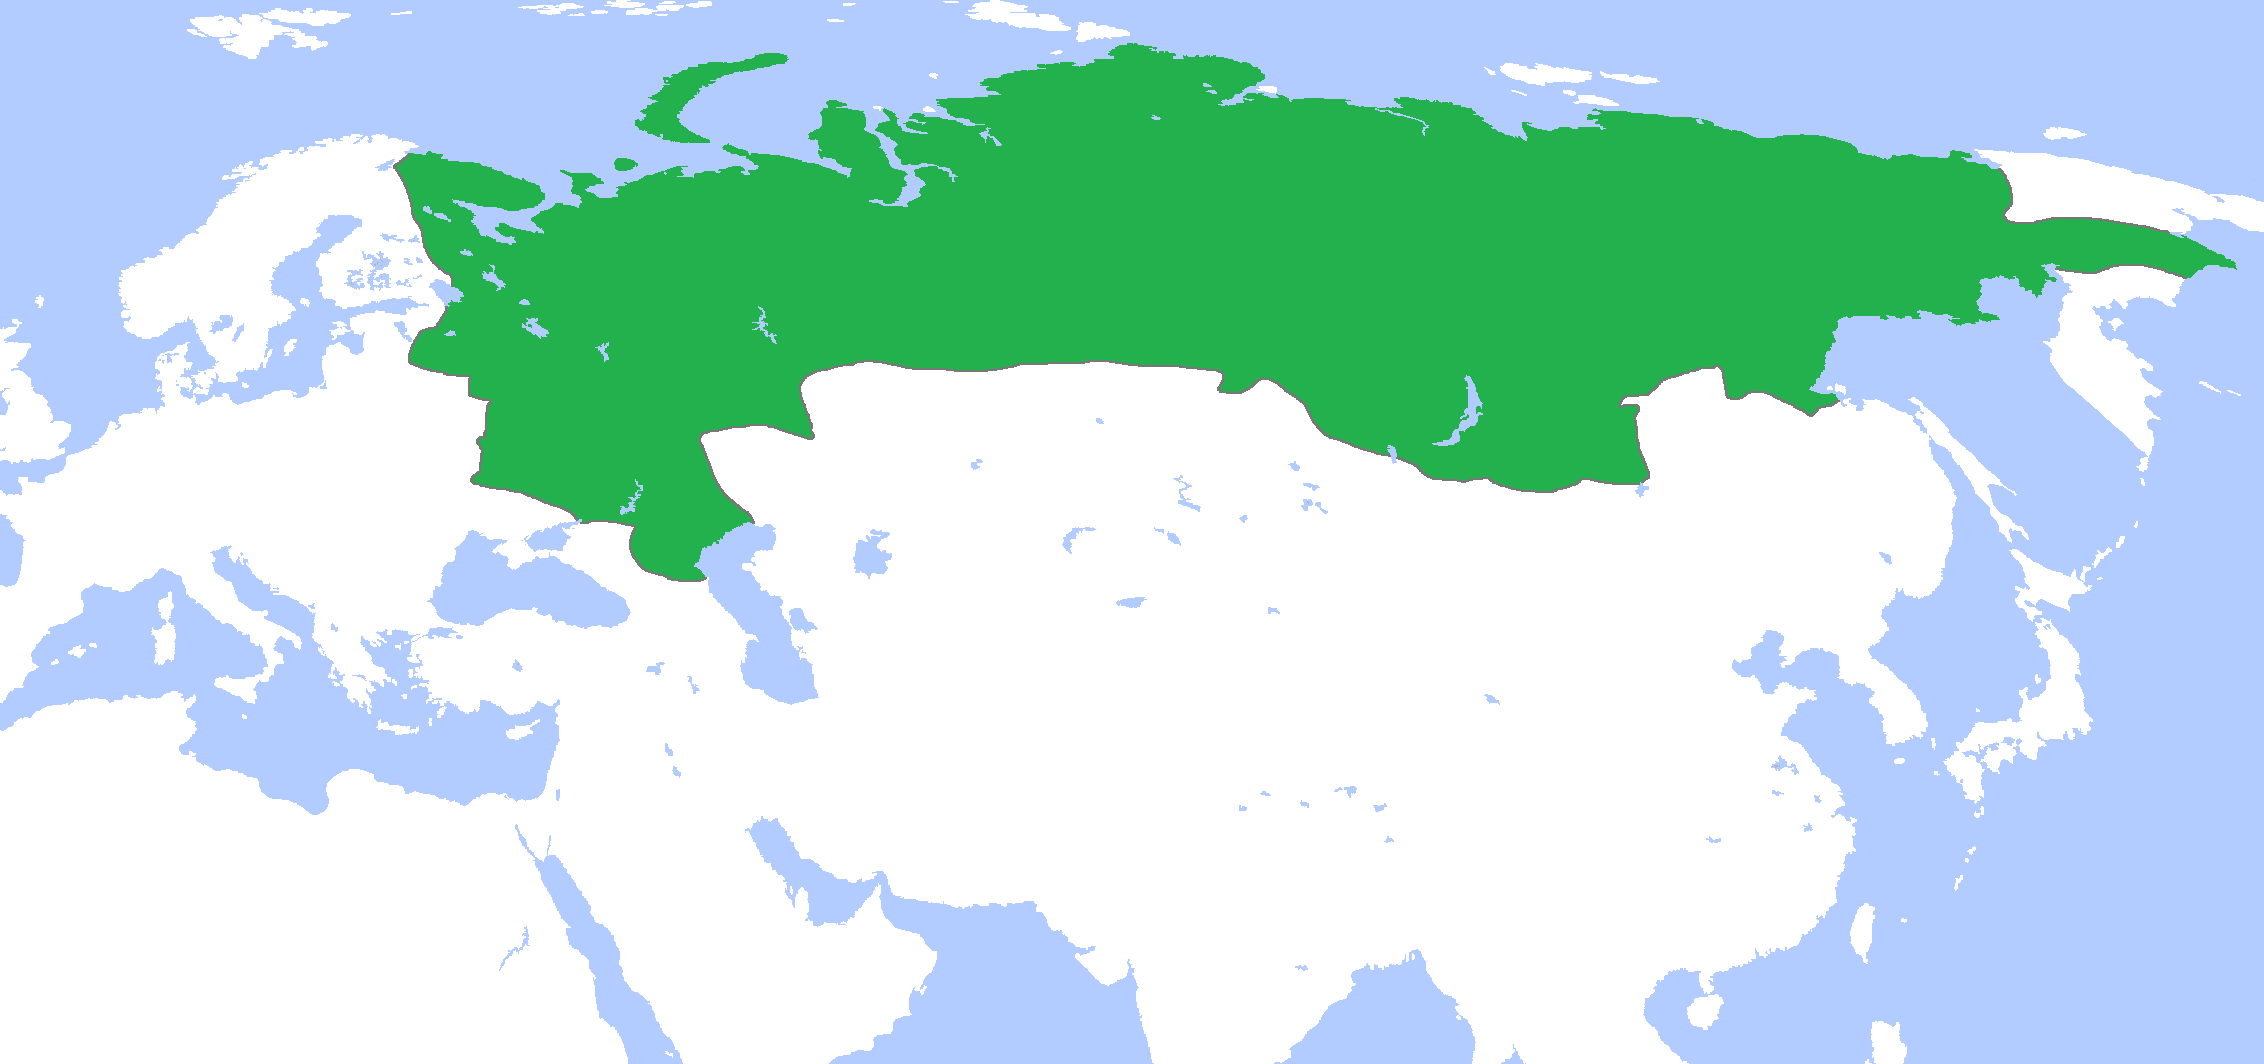 Страна имеющая единую территорию. Русское царство 1547 1721. Империя территория русского царства. Русское царство карта 1547. Русское царство и Российская Империя.